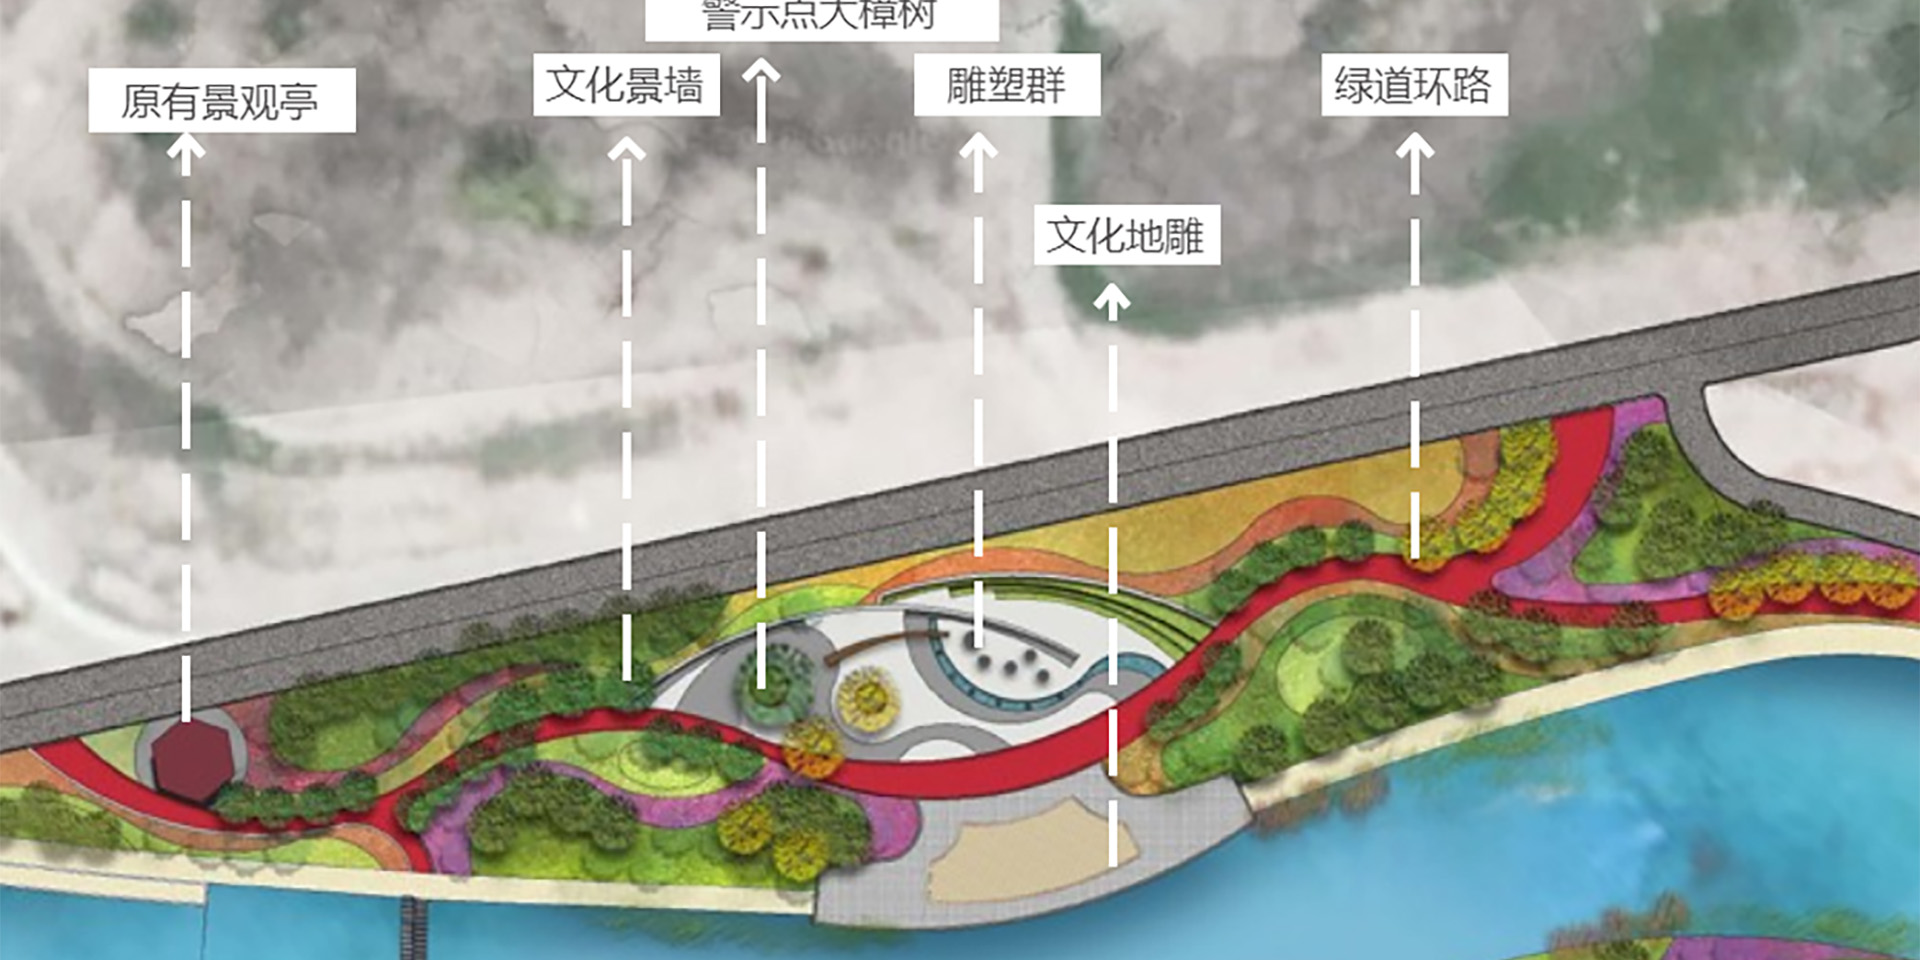 Sucun Village Geological Hazard Site Park Construction Project Suichang